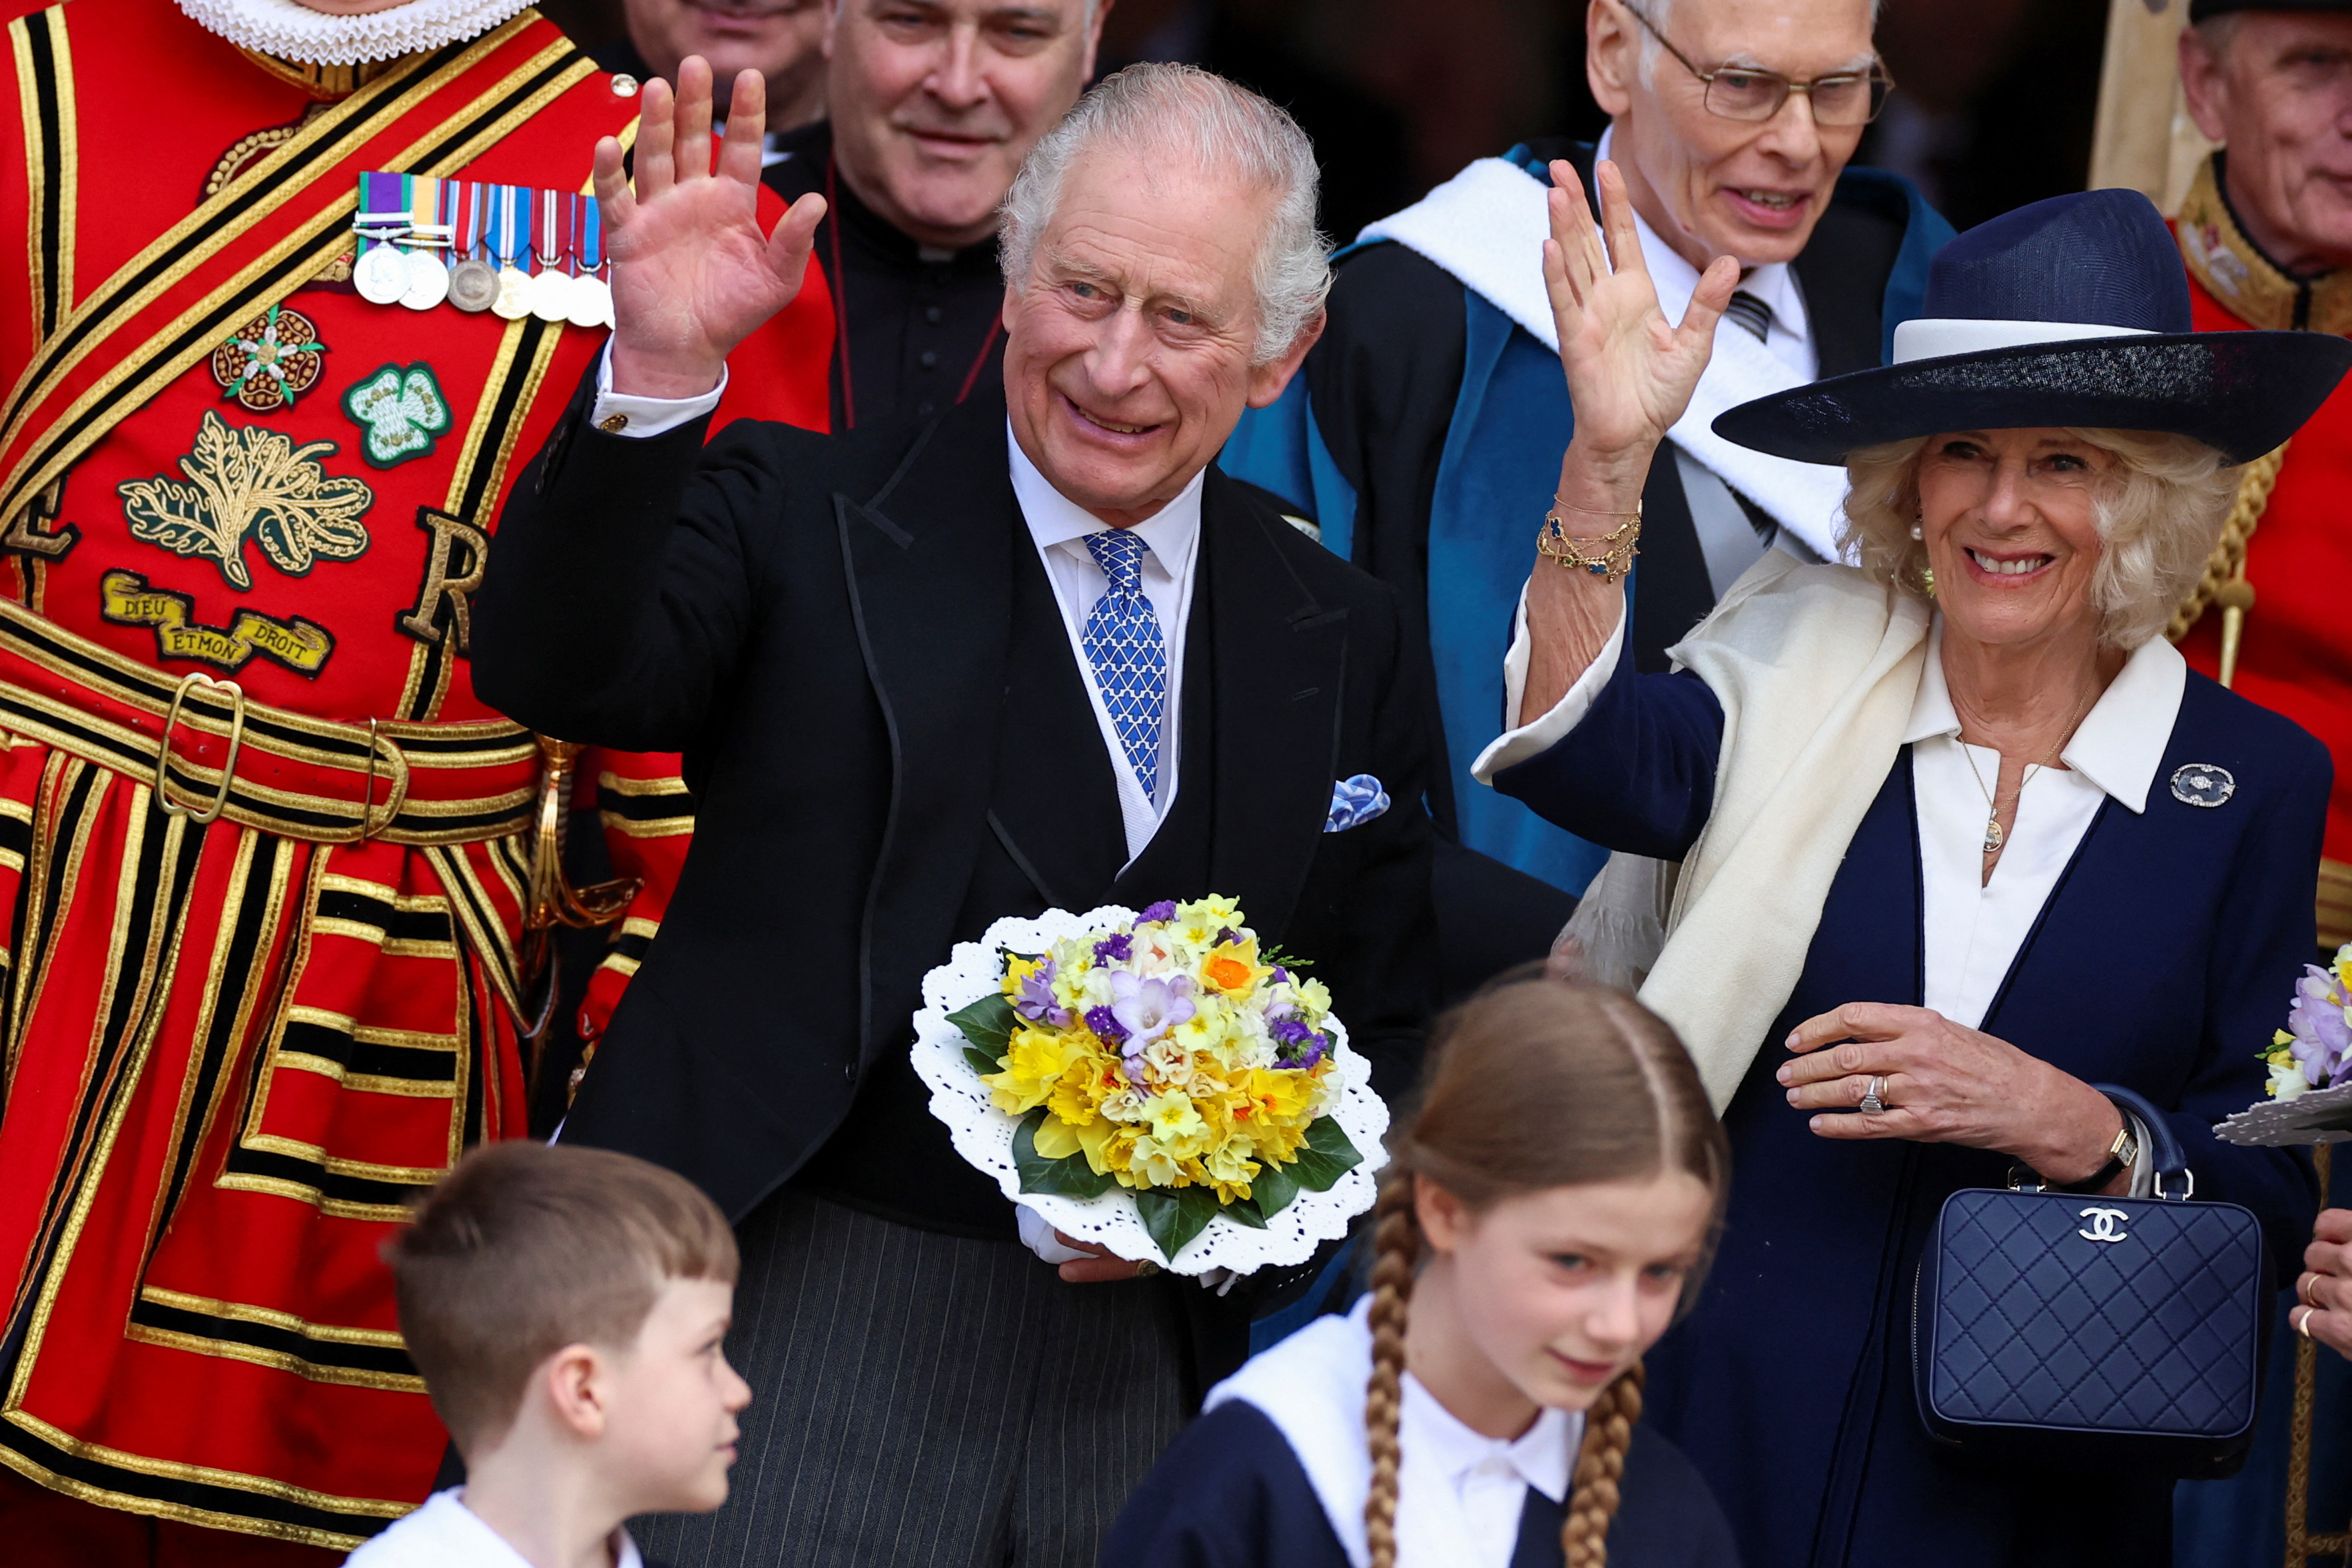 La pareja llegará desde el palacio sin otros miembros de la familia real, en lo que se conoce como la “procesión del rey” (REUTERS/Phil Noble)